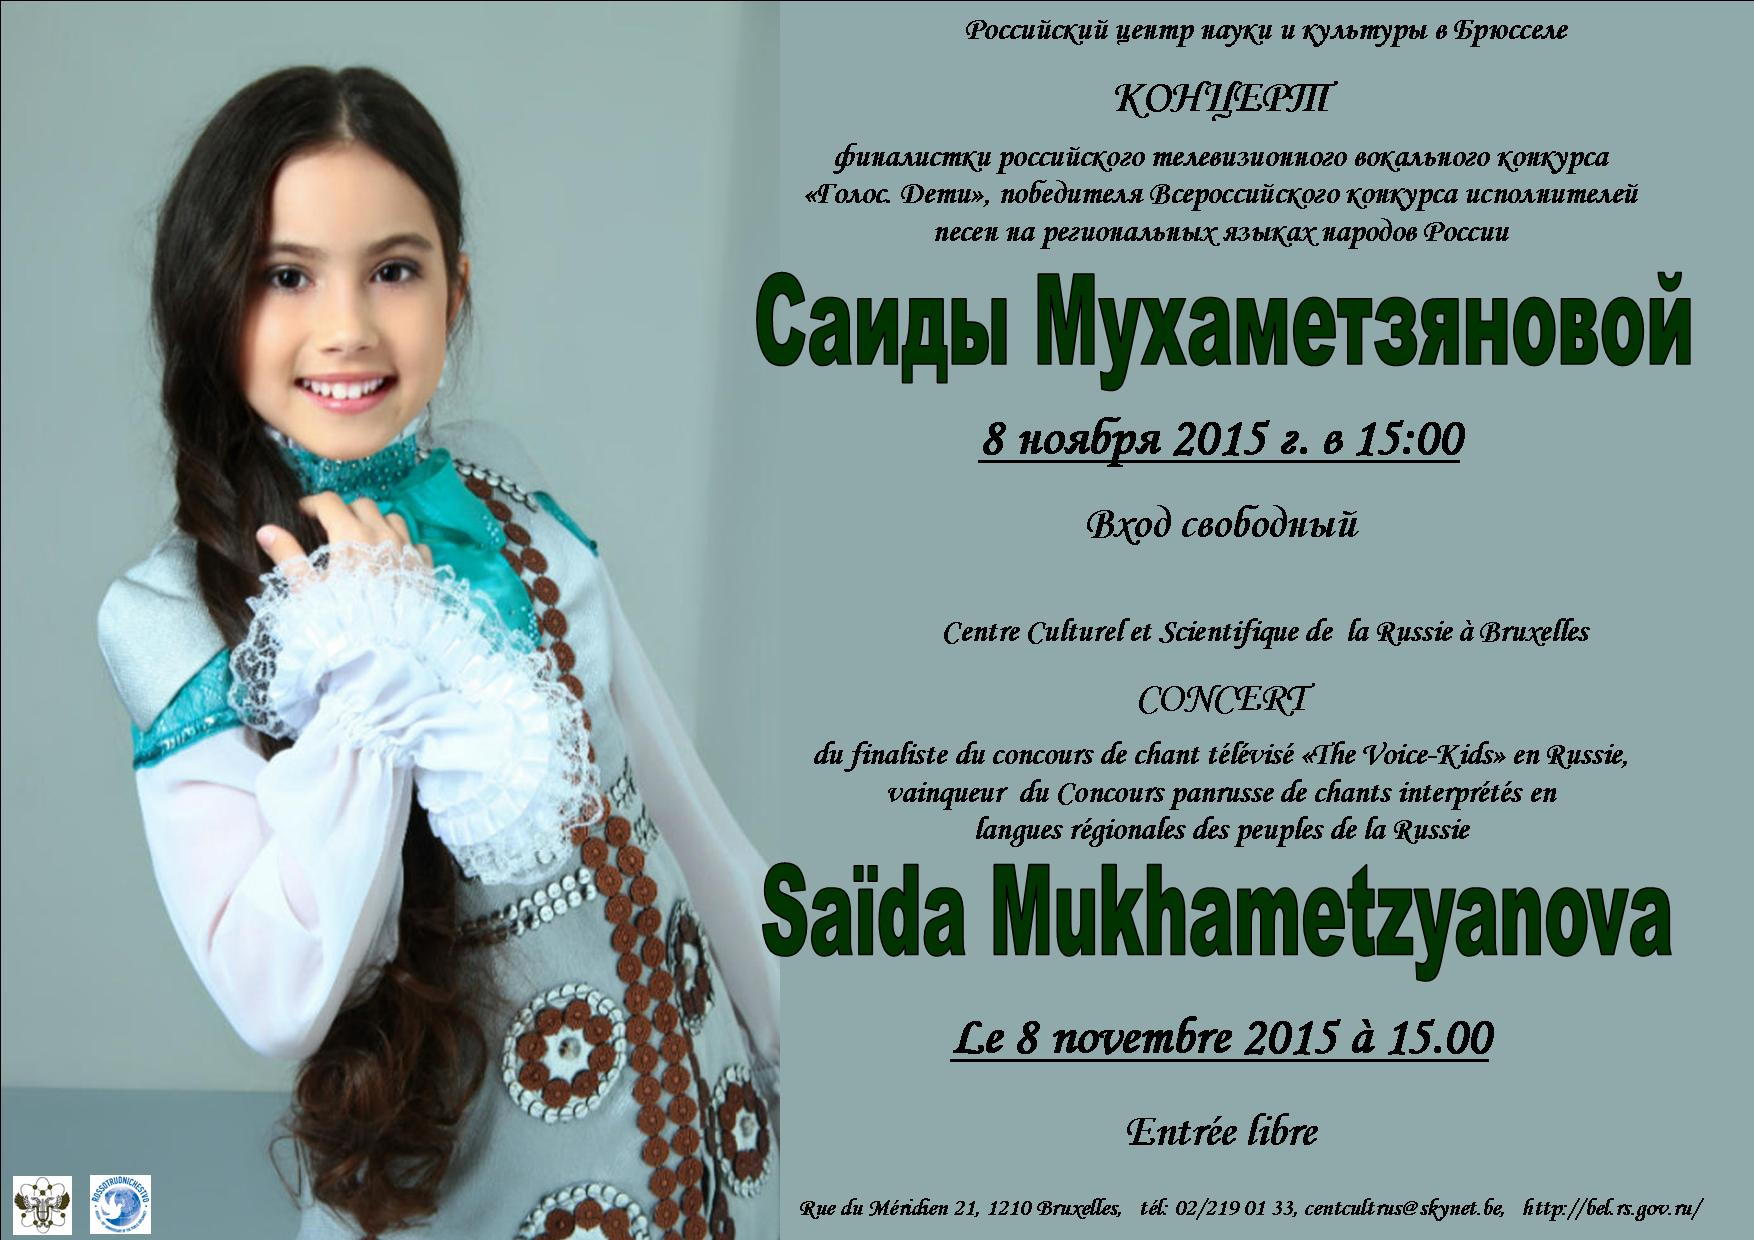 Concert de Saïda Mukhametzyanova. Концерт Саиды Мухаметзяновой.